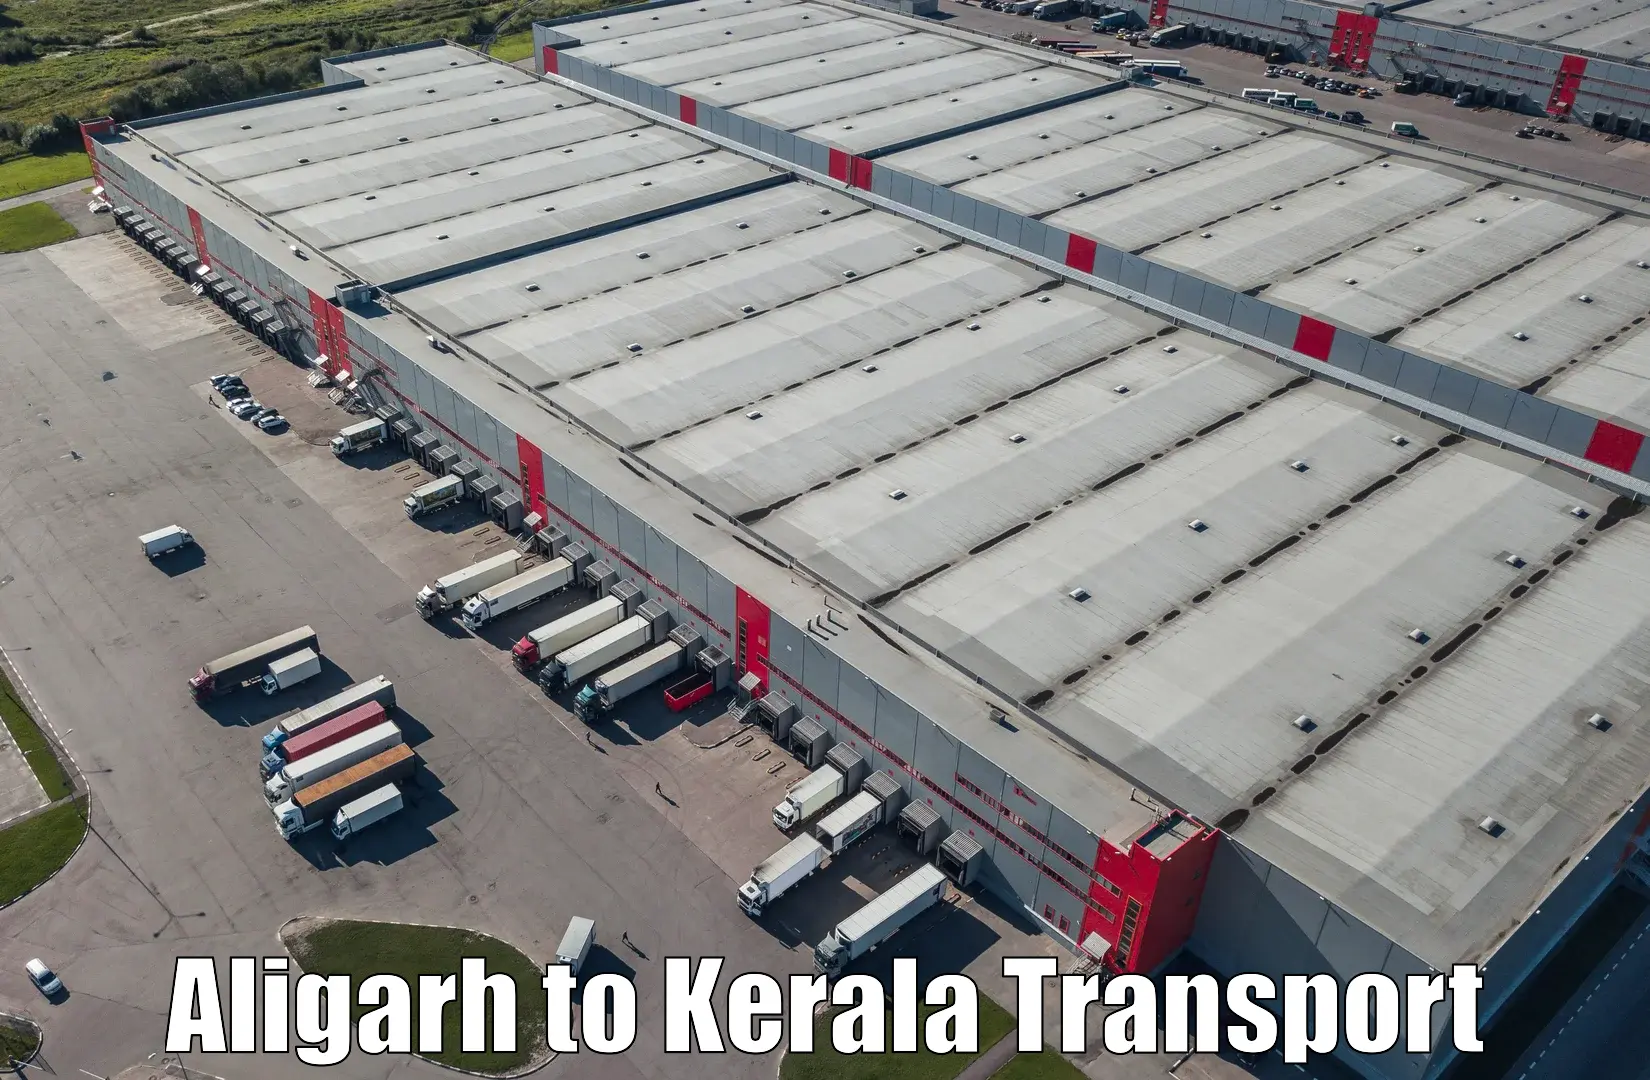 International cargo transportation services Aligarh to Kannapuram